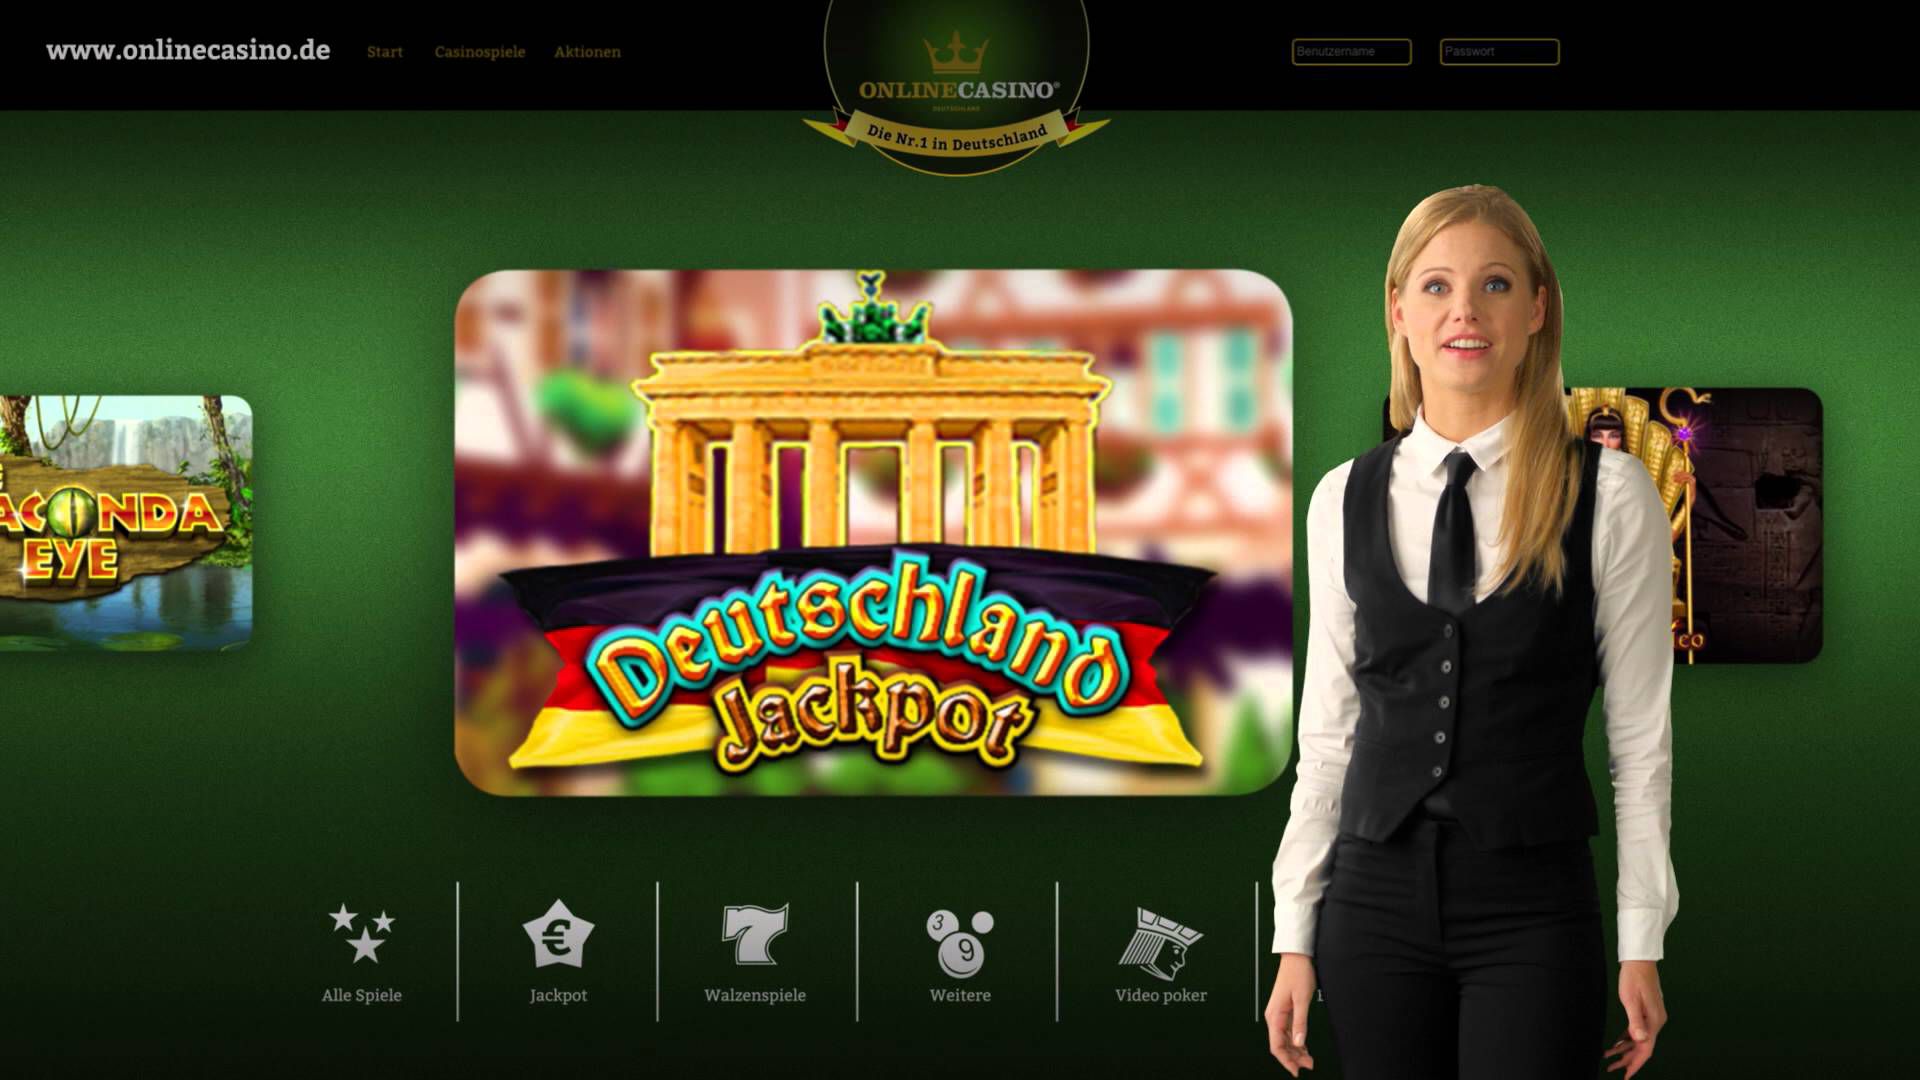 ist online casino in deutschland legal